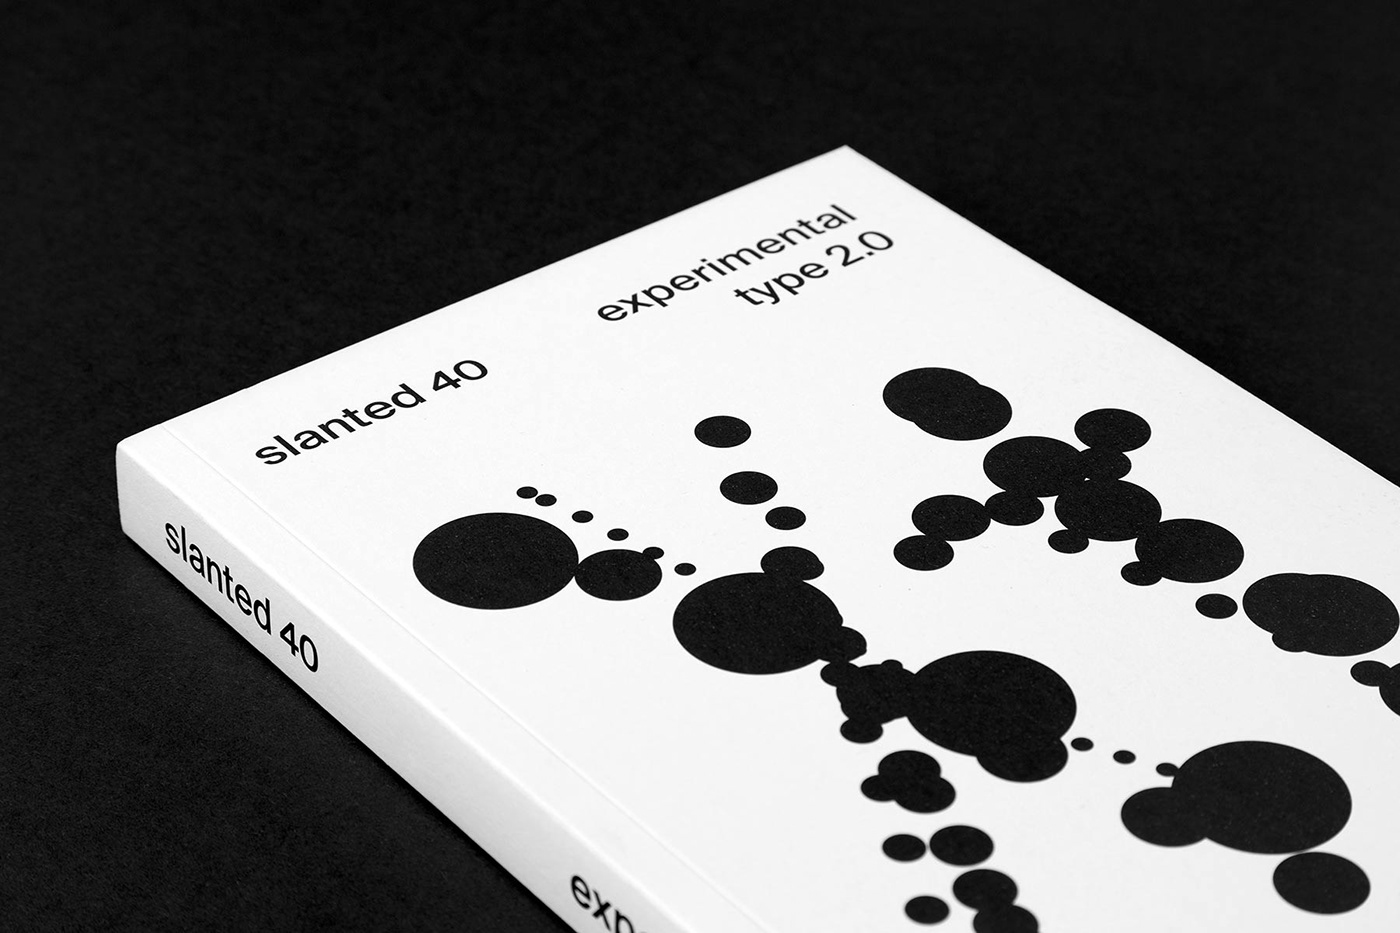 slantedpublishers slantedmagazine slanted graphicdesign 3dtypography ExperimentalArt experimentaltype motiontypography slanted40